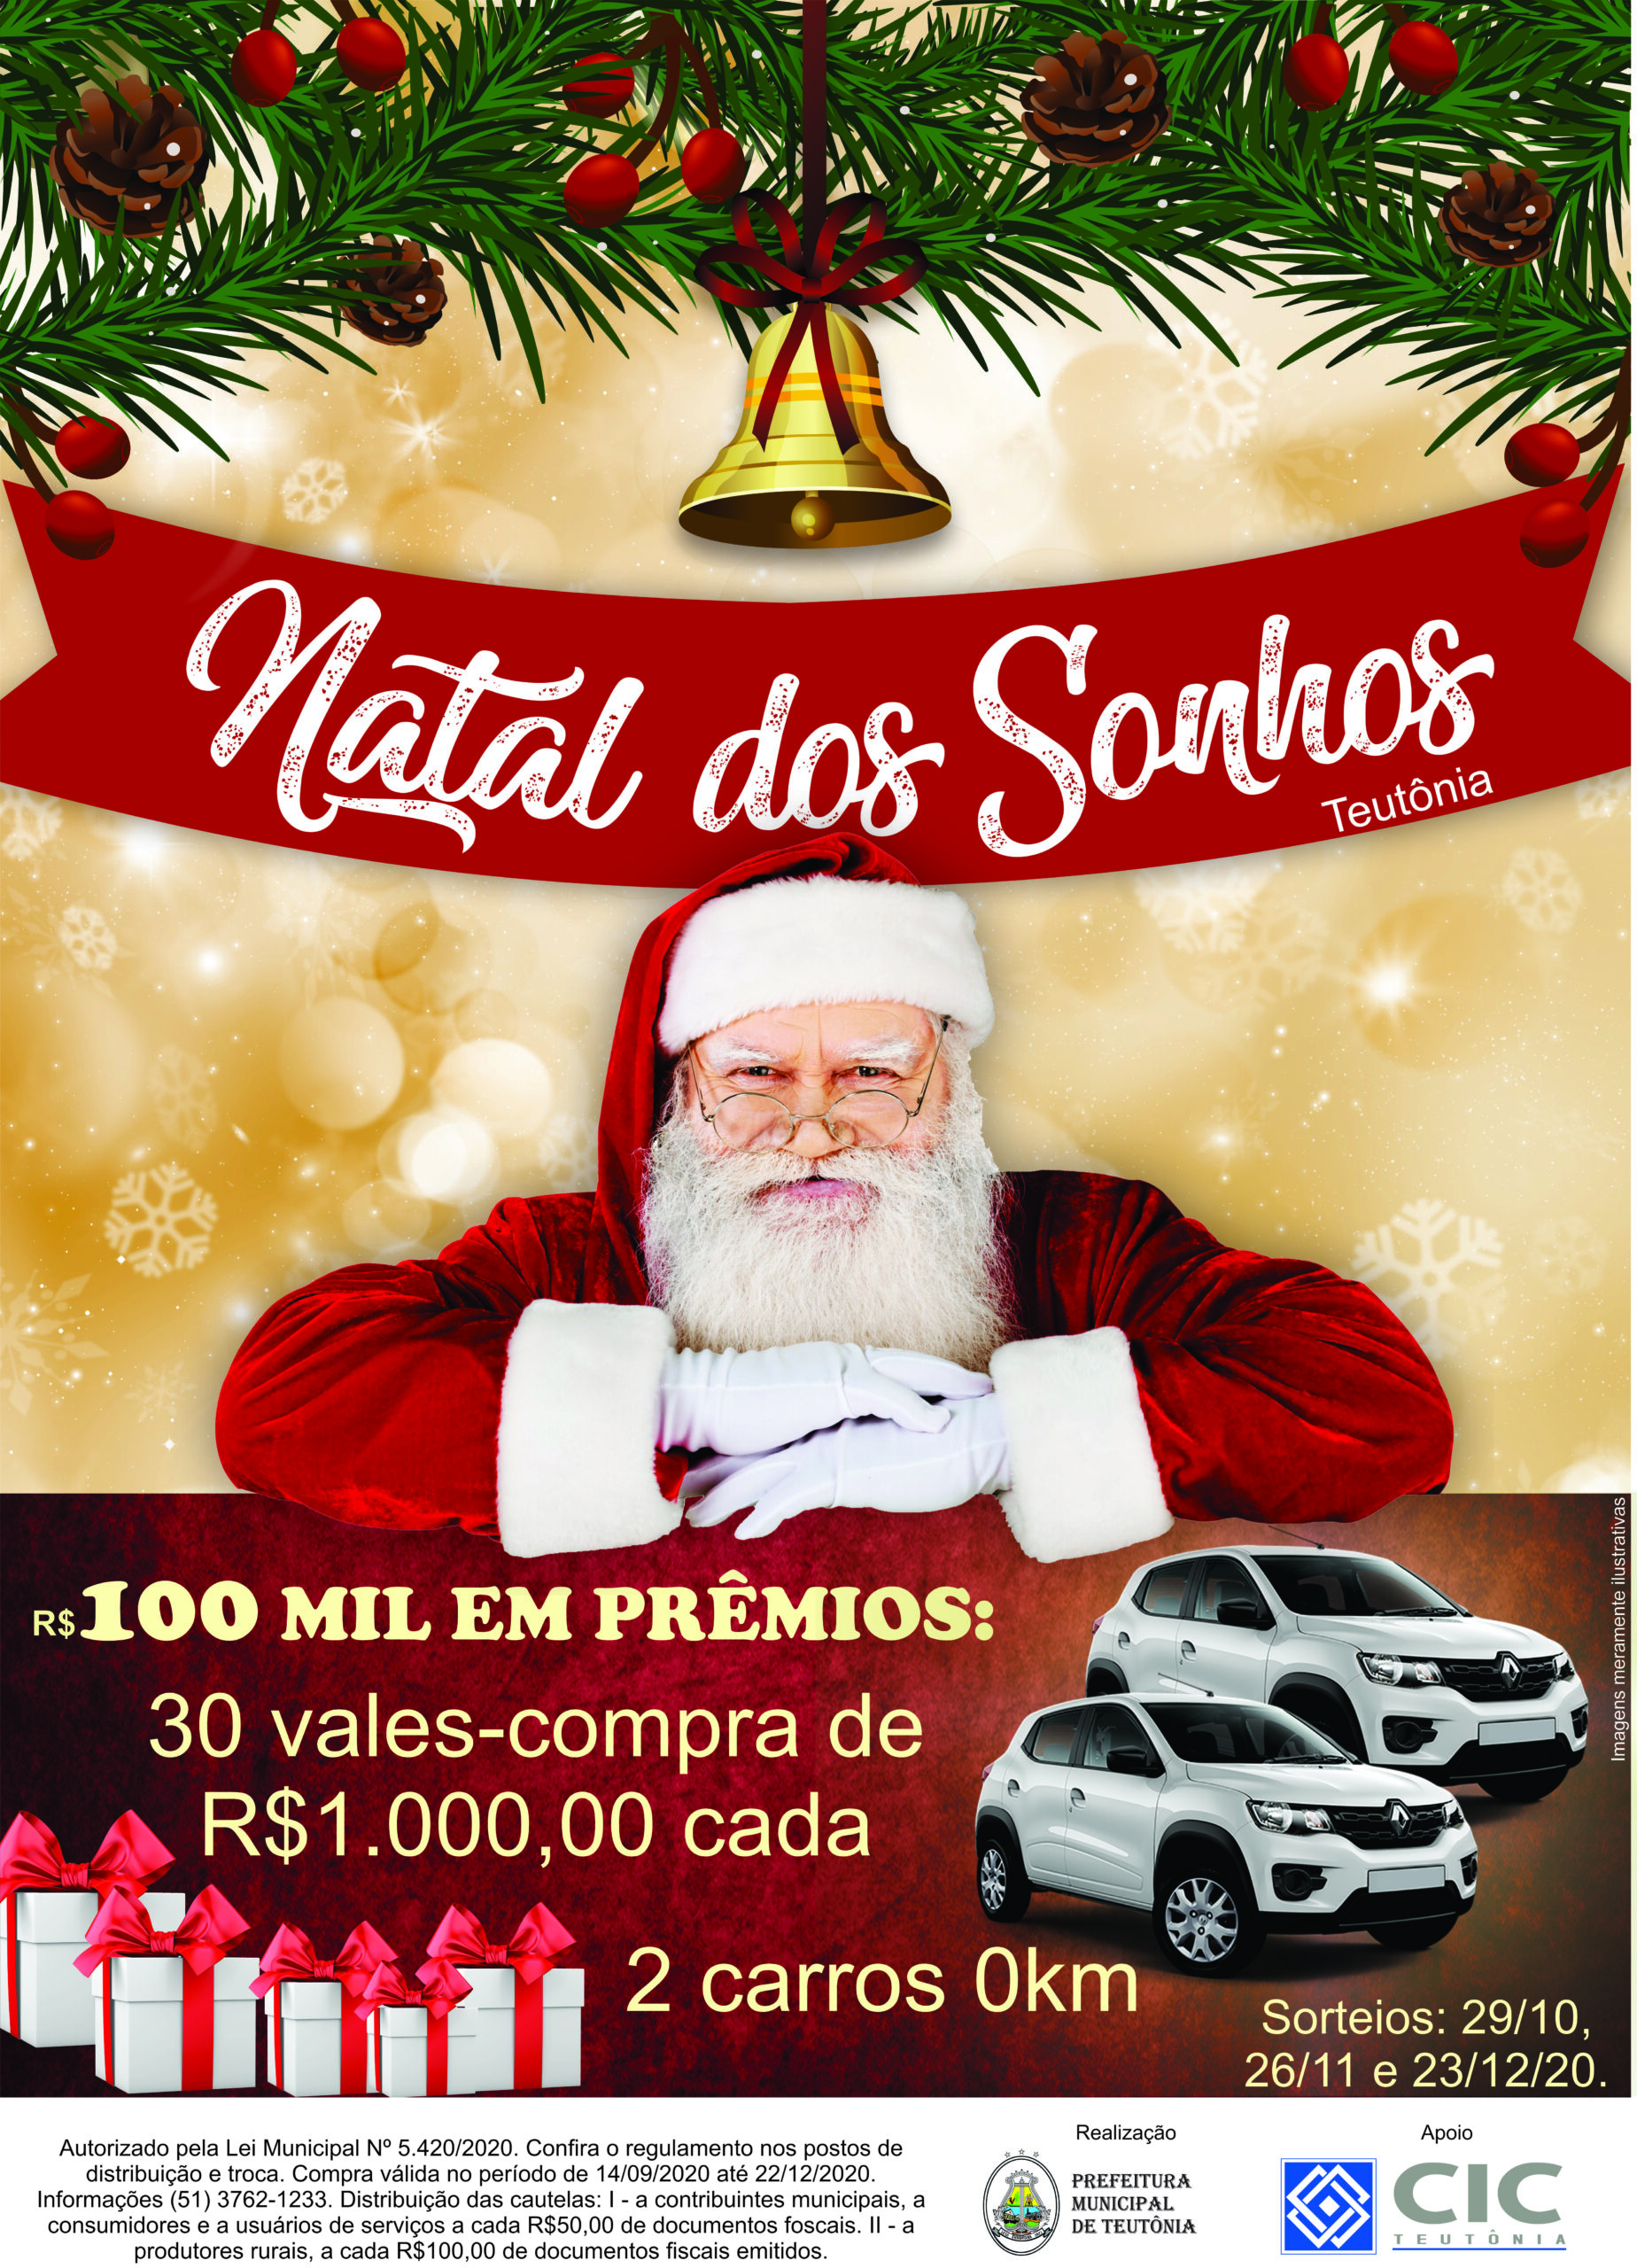 Sorteio Campanha Natal dos Sonhos 2022 – Santana 360 graus